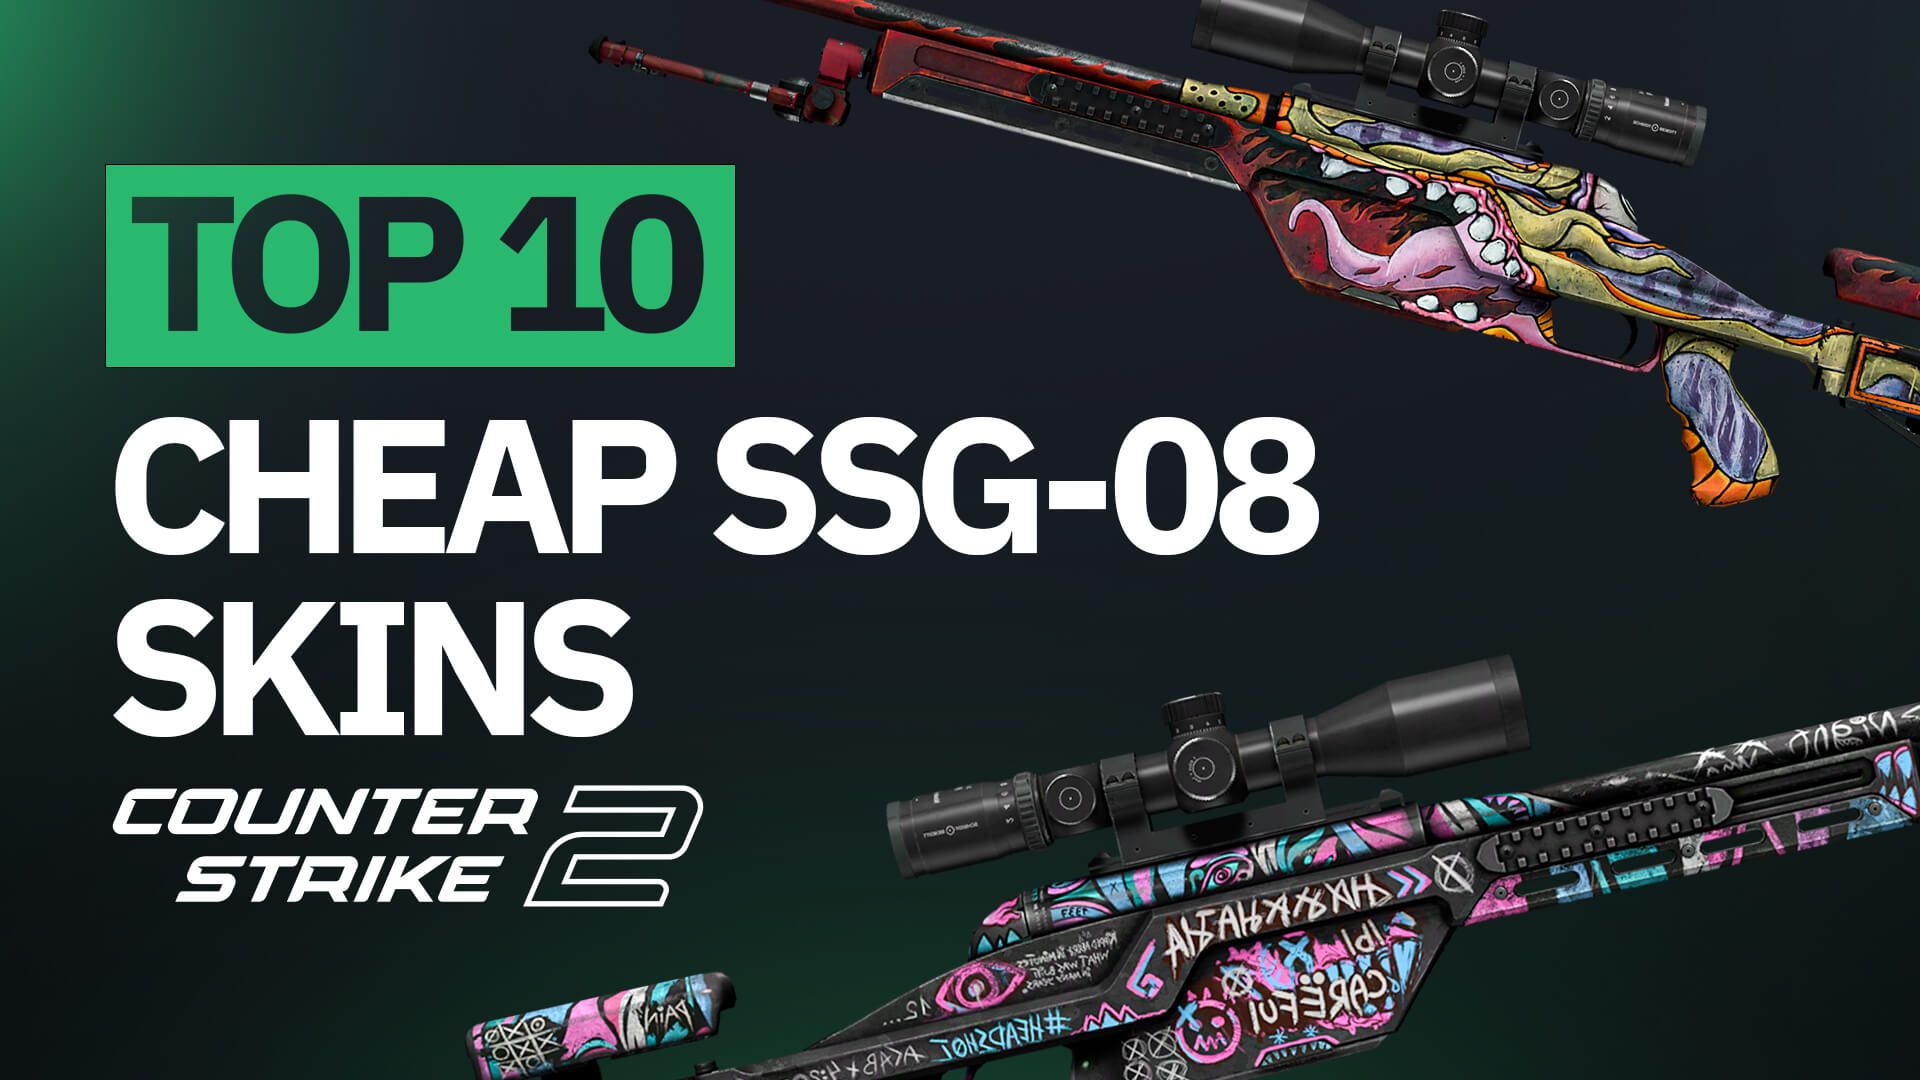 Top 10 Cheap SSG-08 Skins